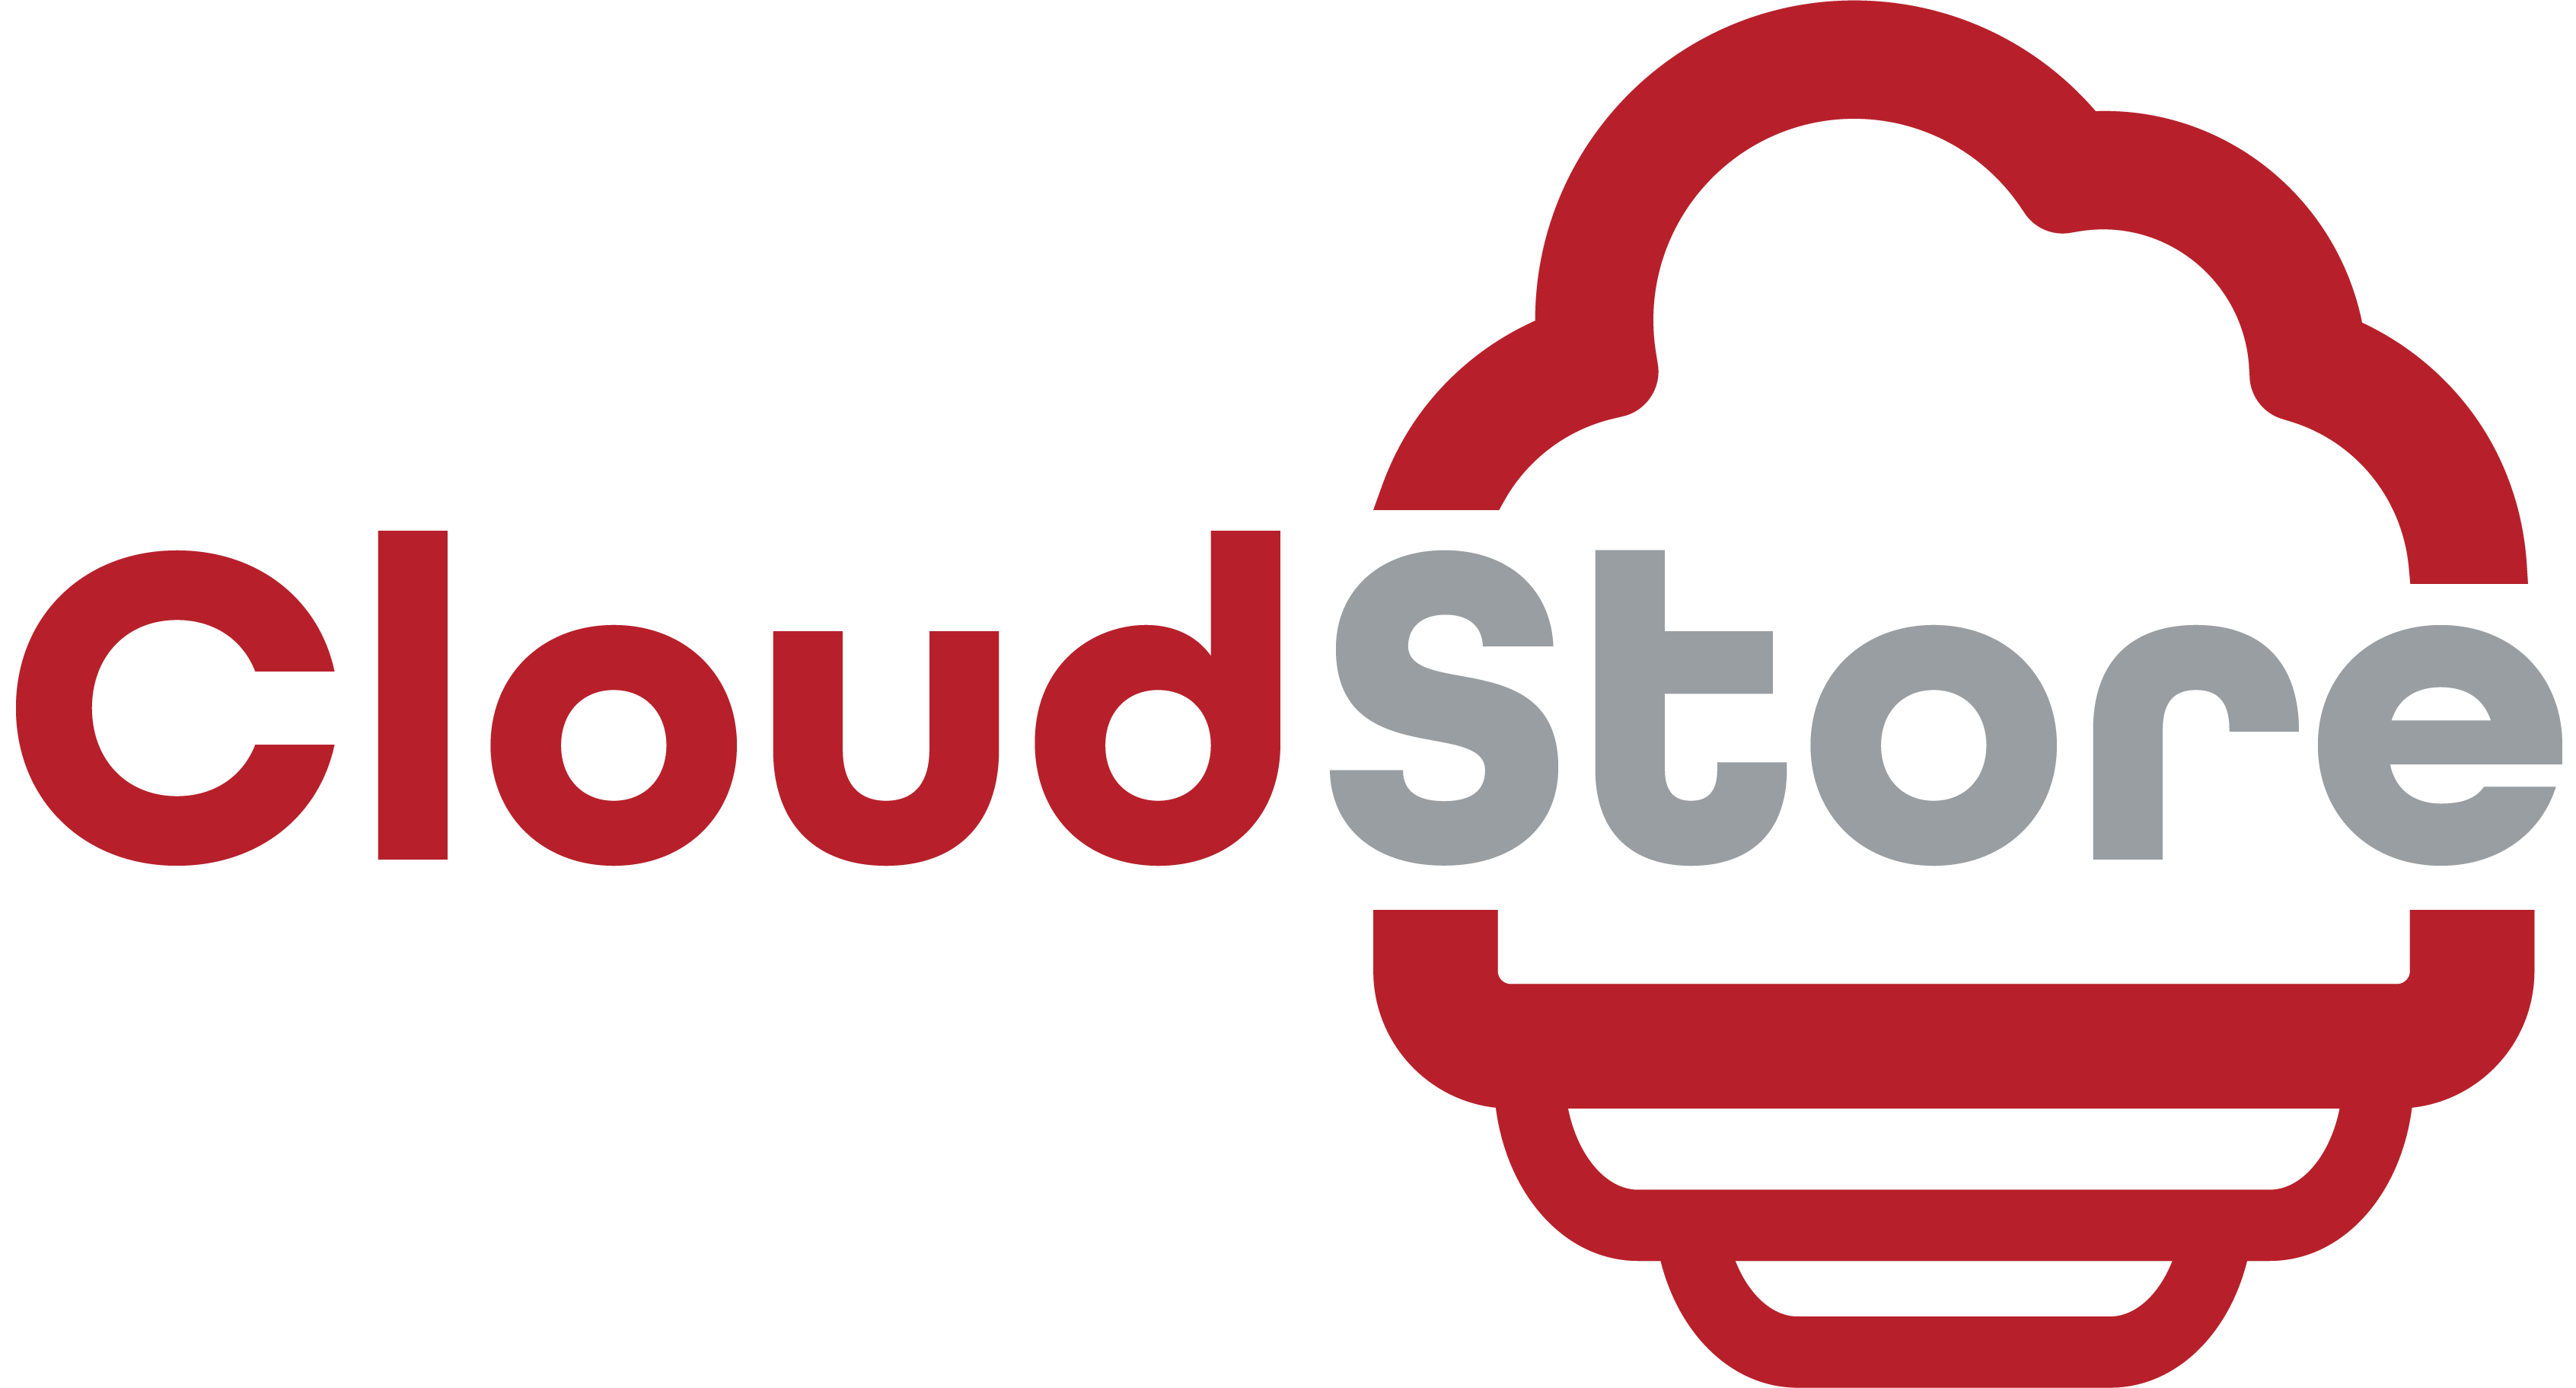 CloudStore logo